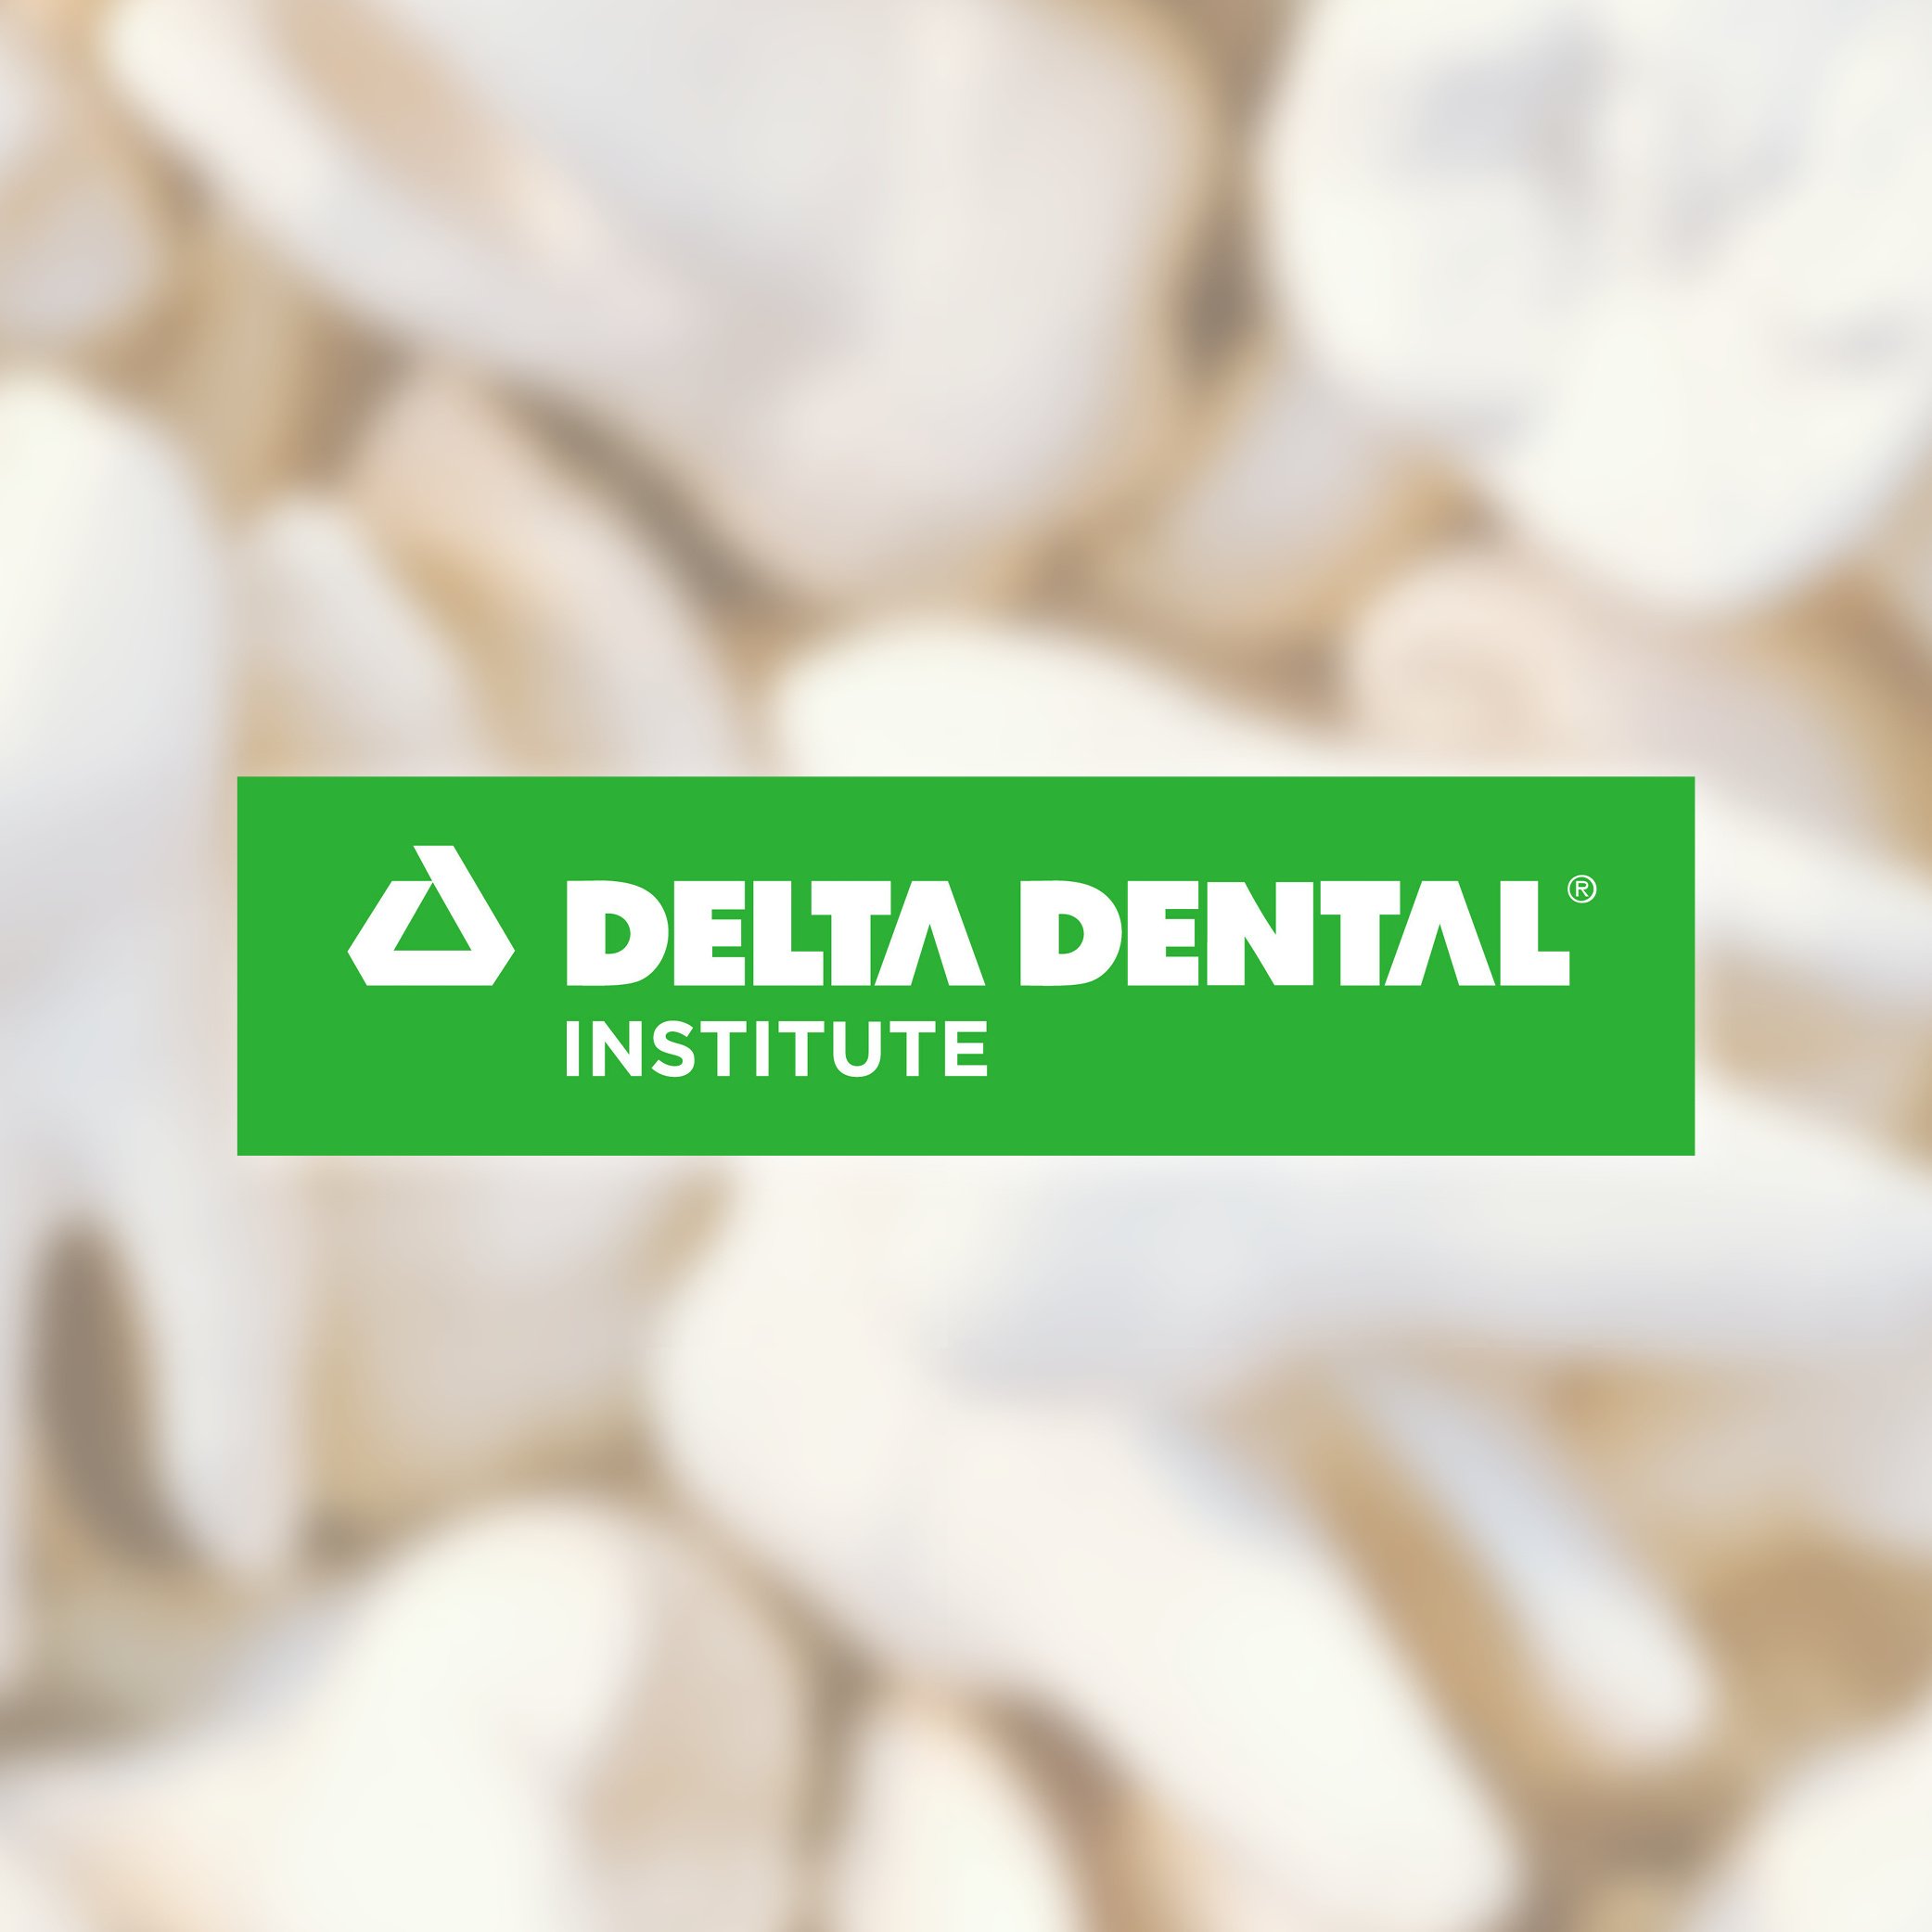 Delta Dental Institute